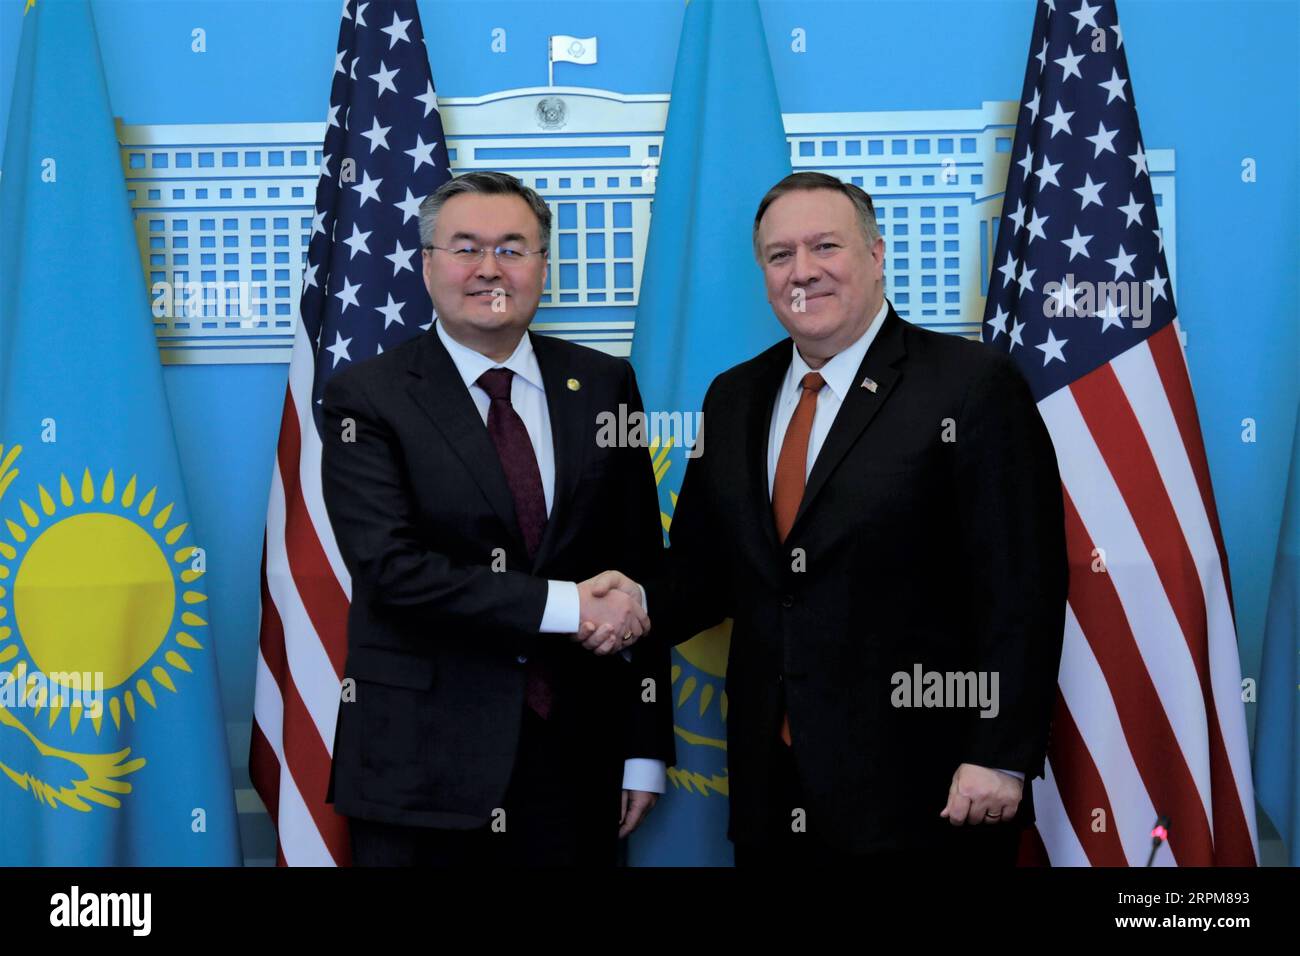 200202 -- NUR-SULTAN, 2 febbraio 2020 -- in visita al Segretario di Stato americano Mike Pompeo e al Ministro degli Esteri kazako Mukhtar Tleuberdi stringono la mano prima di tenere una conferenza stampa a Nur-Sultan, Kazakistan, 2 febbraio 2020. Pompeo ha detto domenica che il Kazakistan è un partner affidabile degli Stati Uniti in Asia centrale e si è impegnato a promuovere il partenariato strategico rafforzato tra i due paesi. Foto di Kalizhan Ospanov/Xinhua KAZAKISTAN-NUR-SULTAN-U.S.-POMPEO-VISIT RenxJun PUBLICATIONxNOTxINxCHN Foto Stock